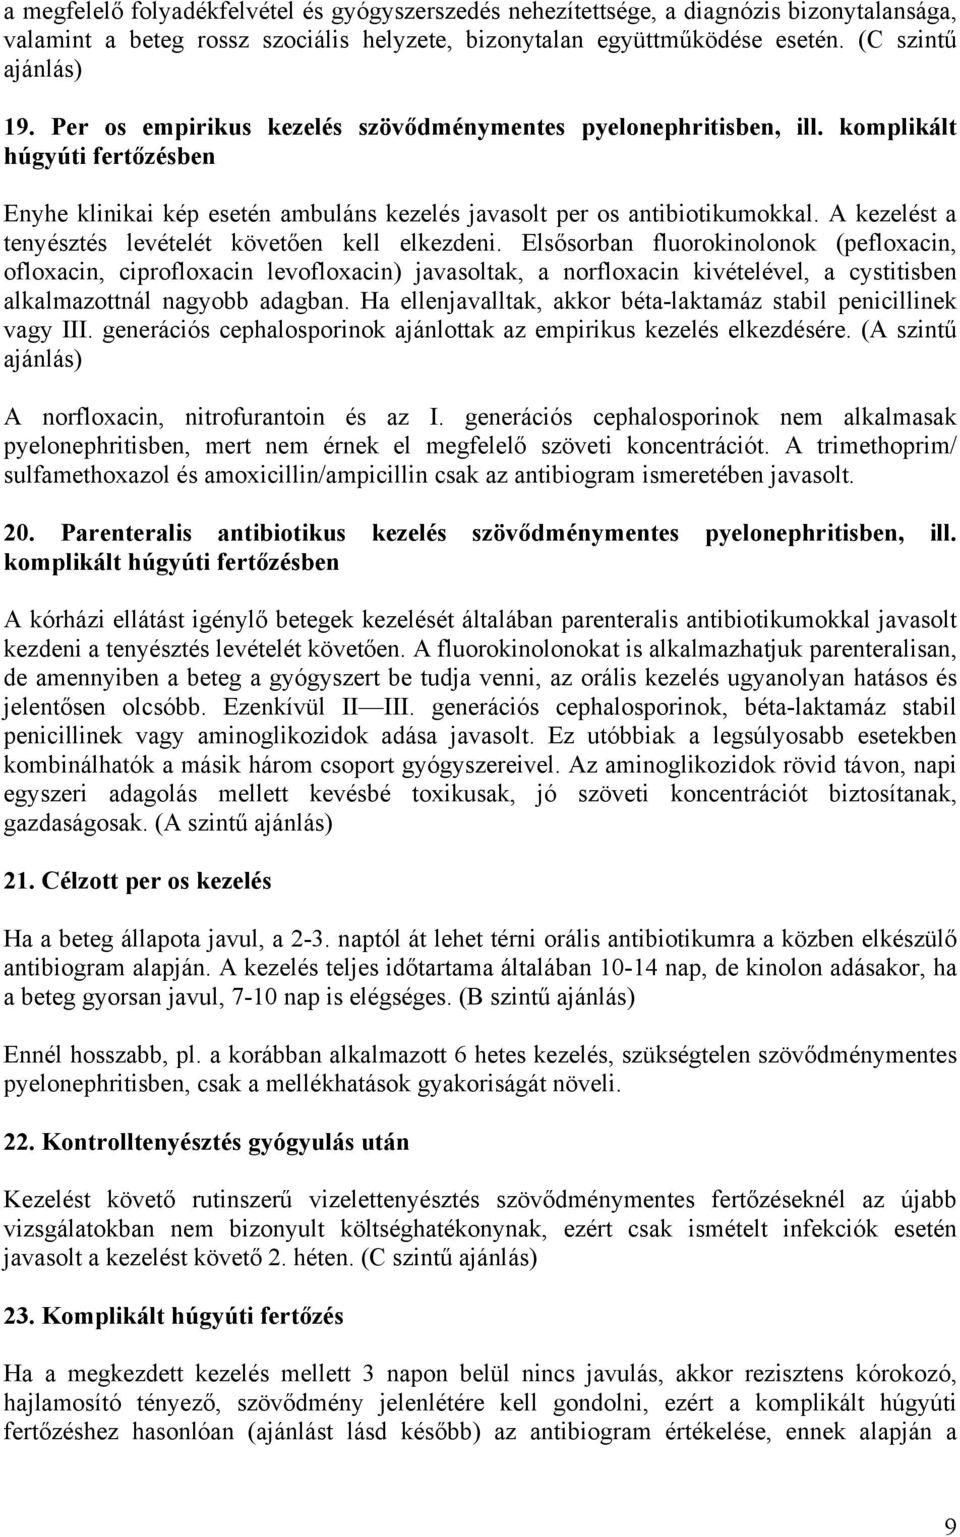 IPER kezelés prosztatitis)